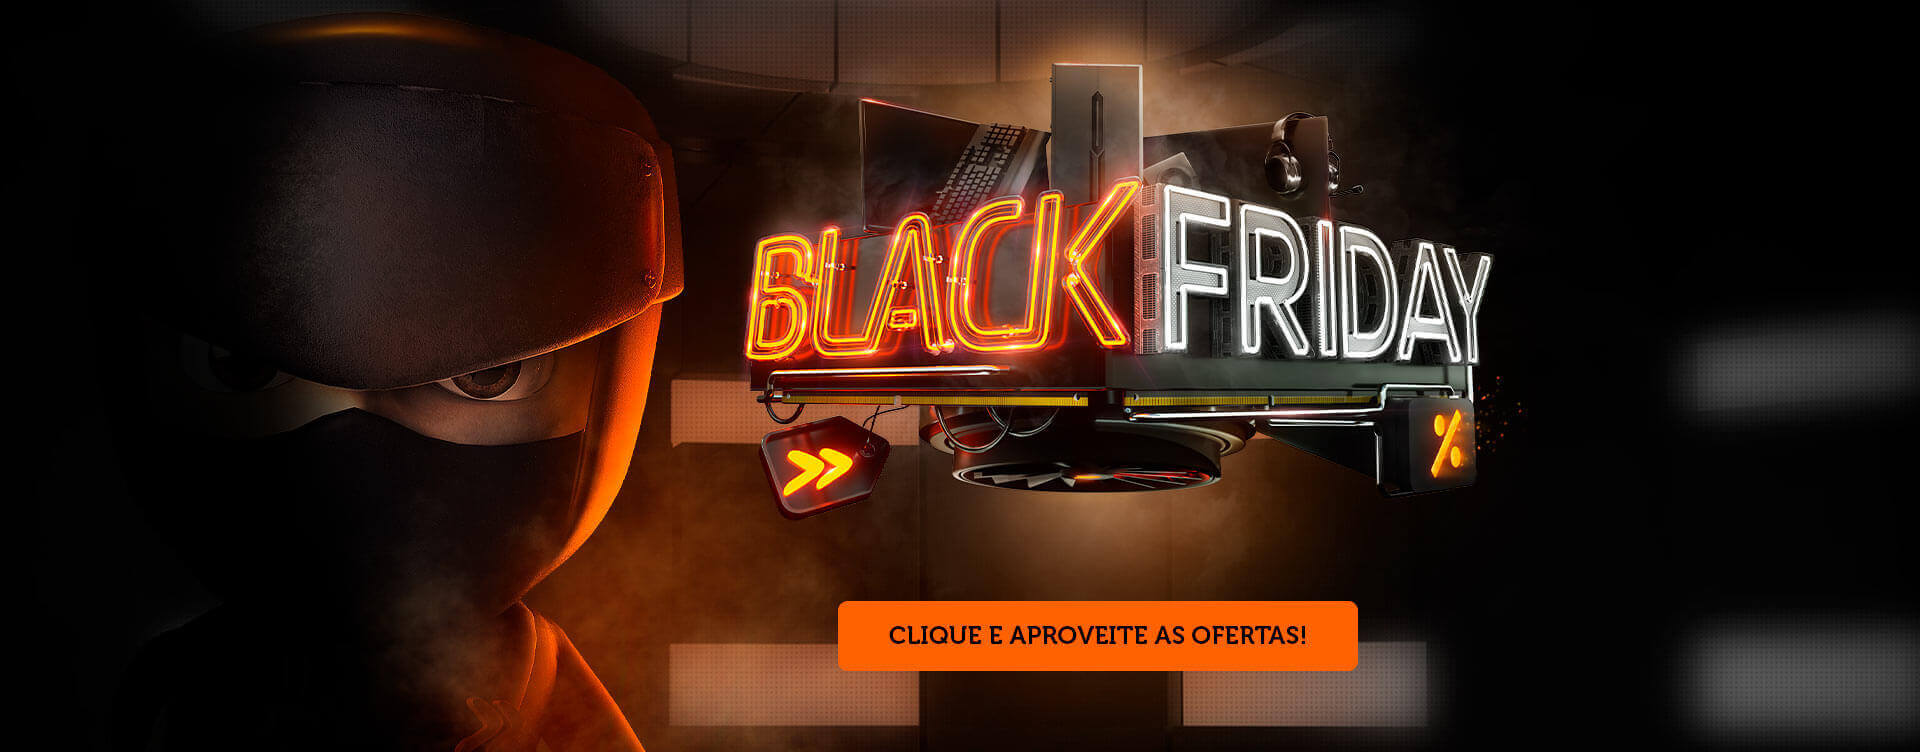 Black Friday KaBuM!: mais de 500 ofertas com até 80% de desconto